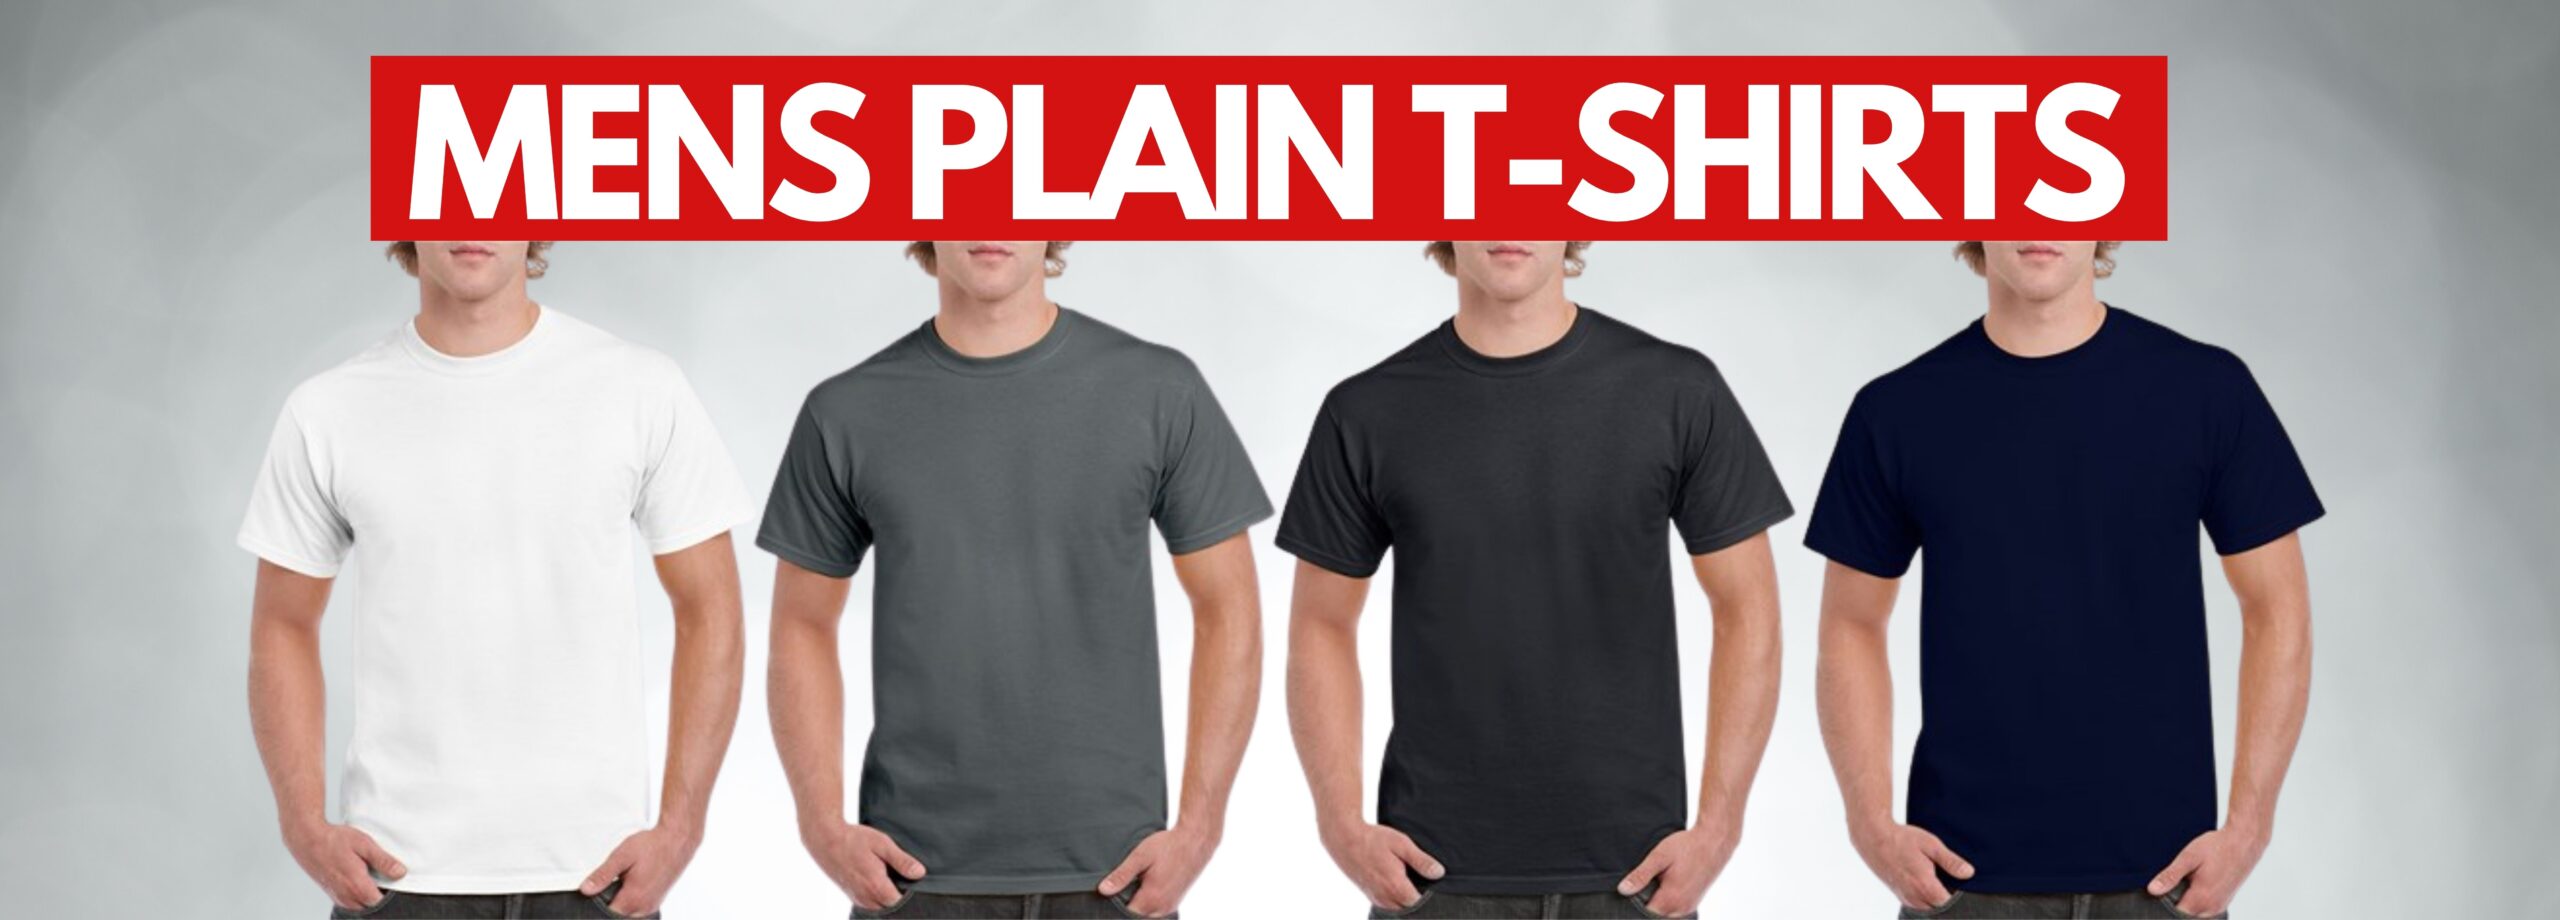 Mens Plain T shirts